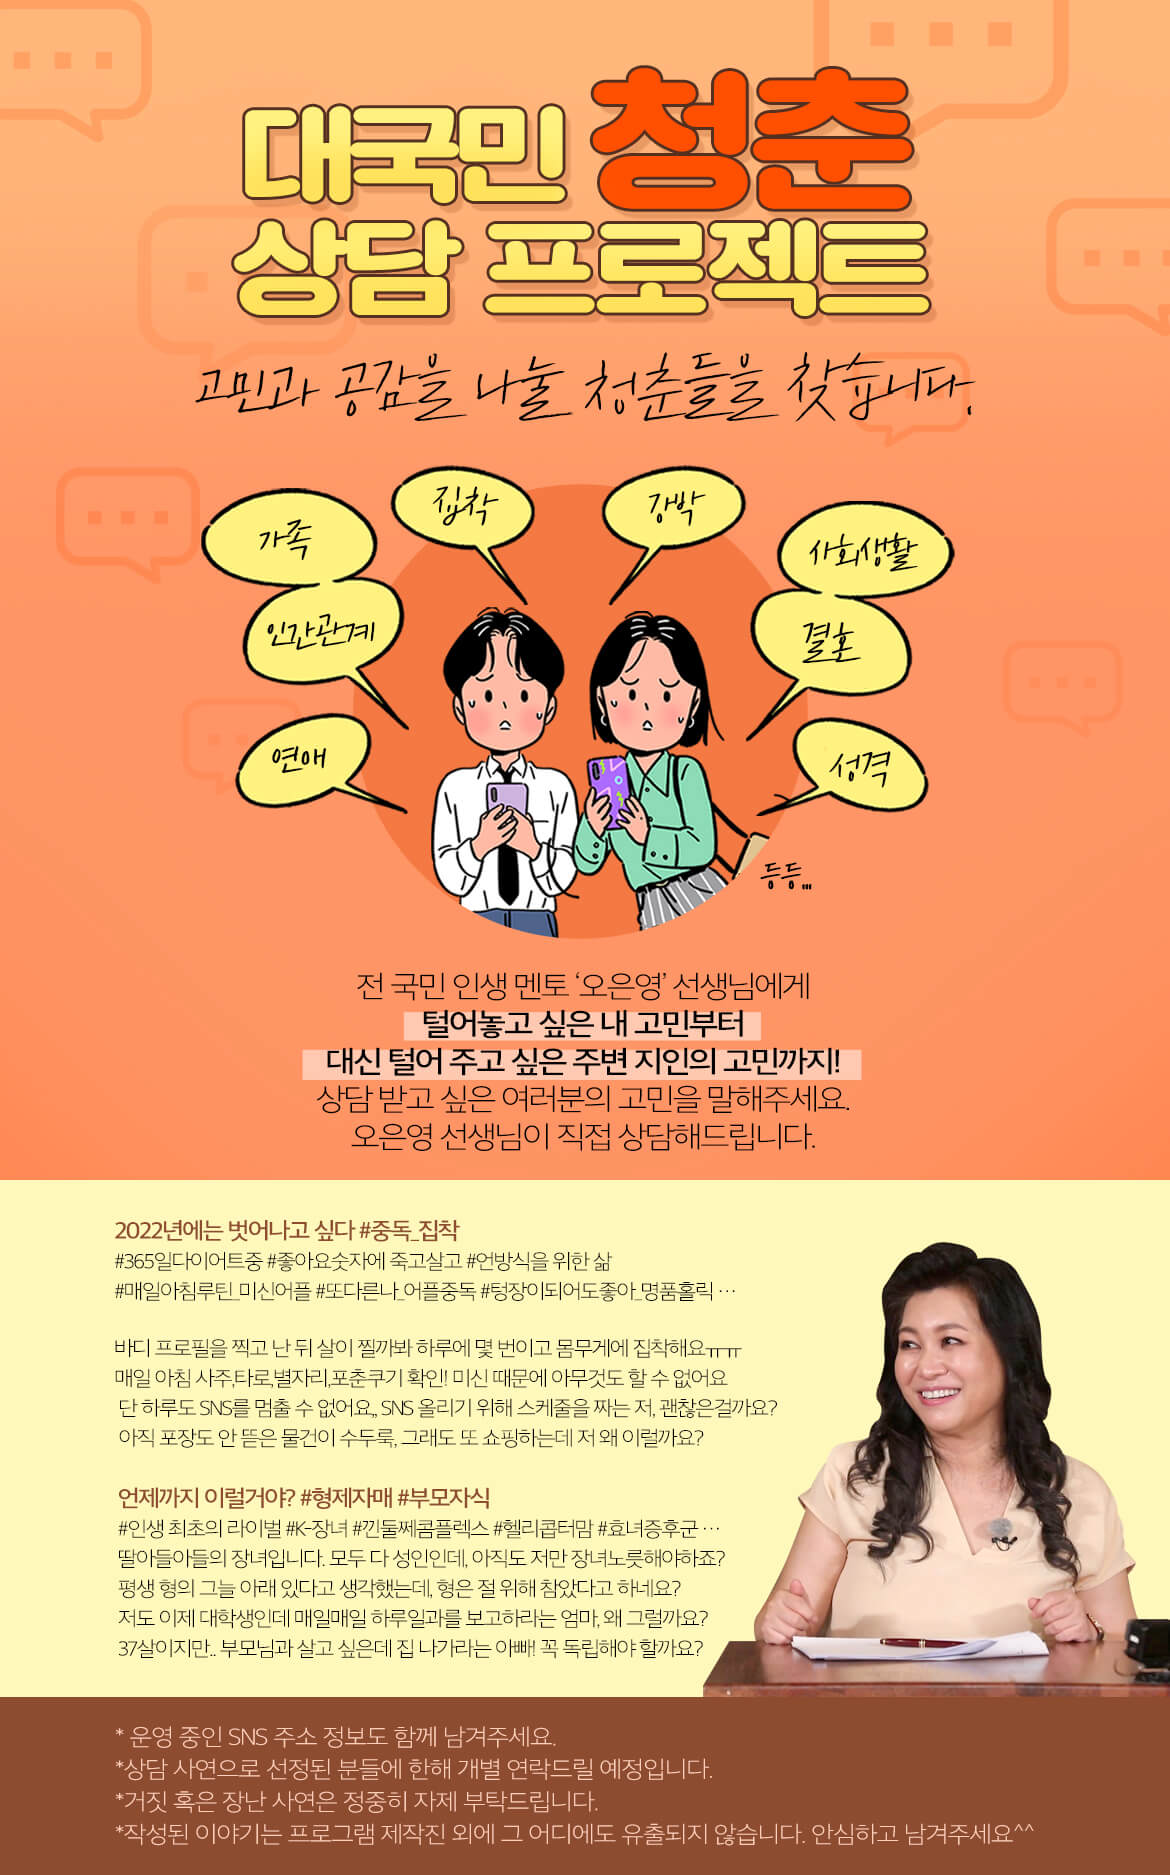 SBS 예능 프로그램 '써클 하우스' - 소개